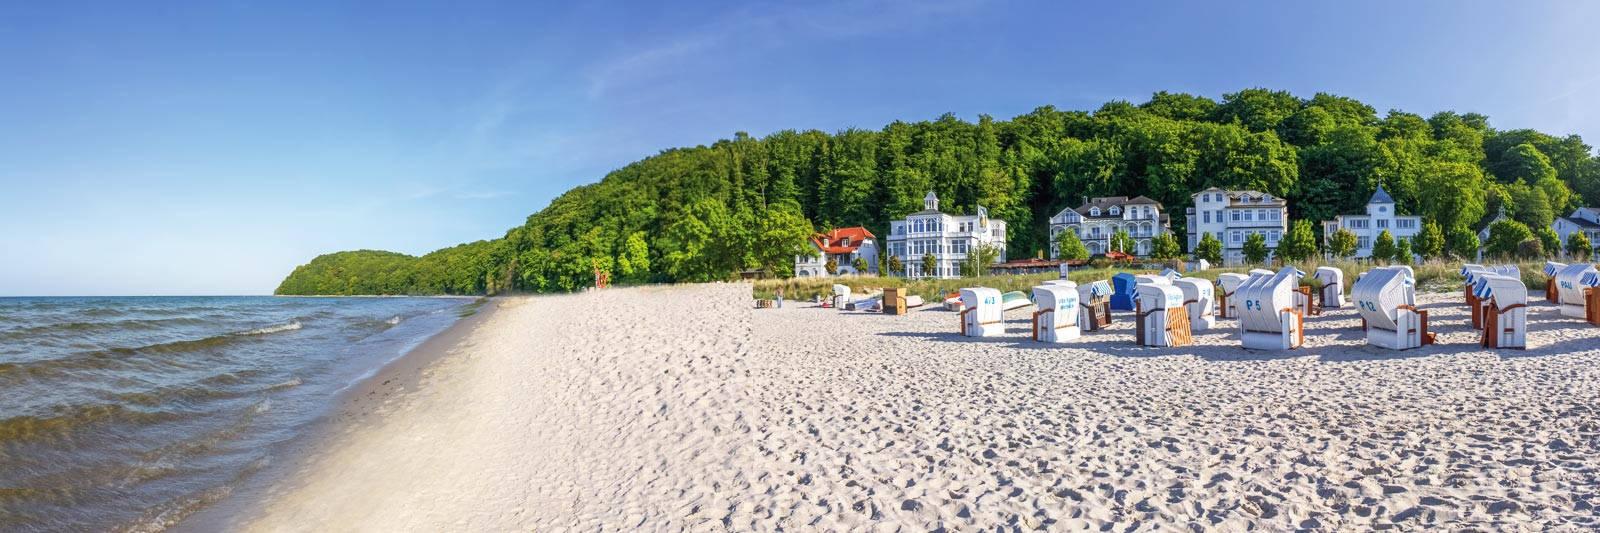 505 Ferienwohnungen und Ferienhäuser in Güstrow - tourist-online.de